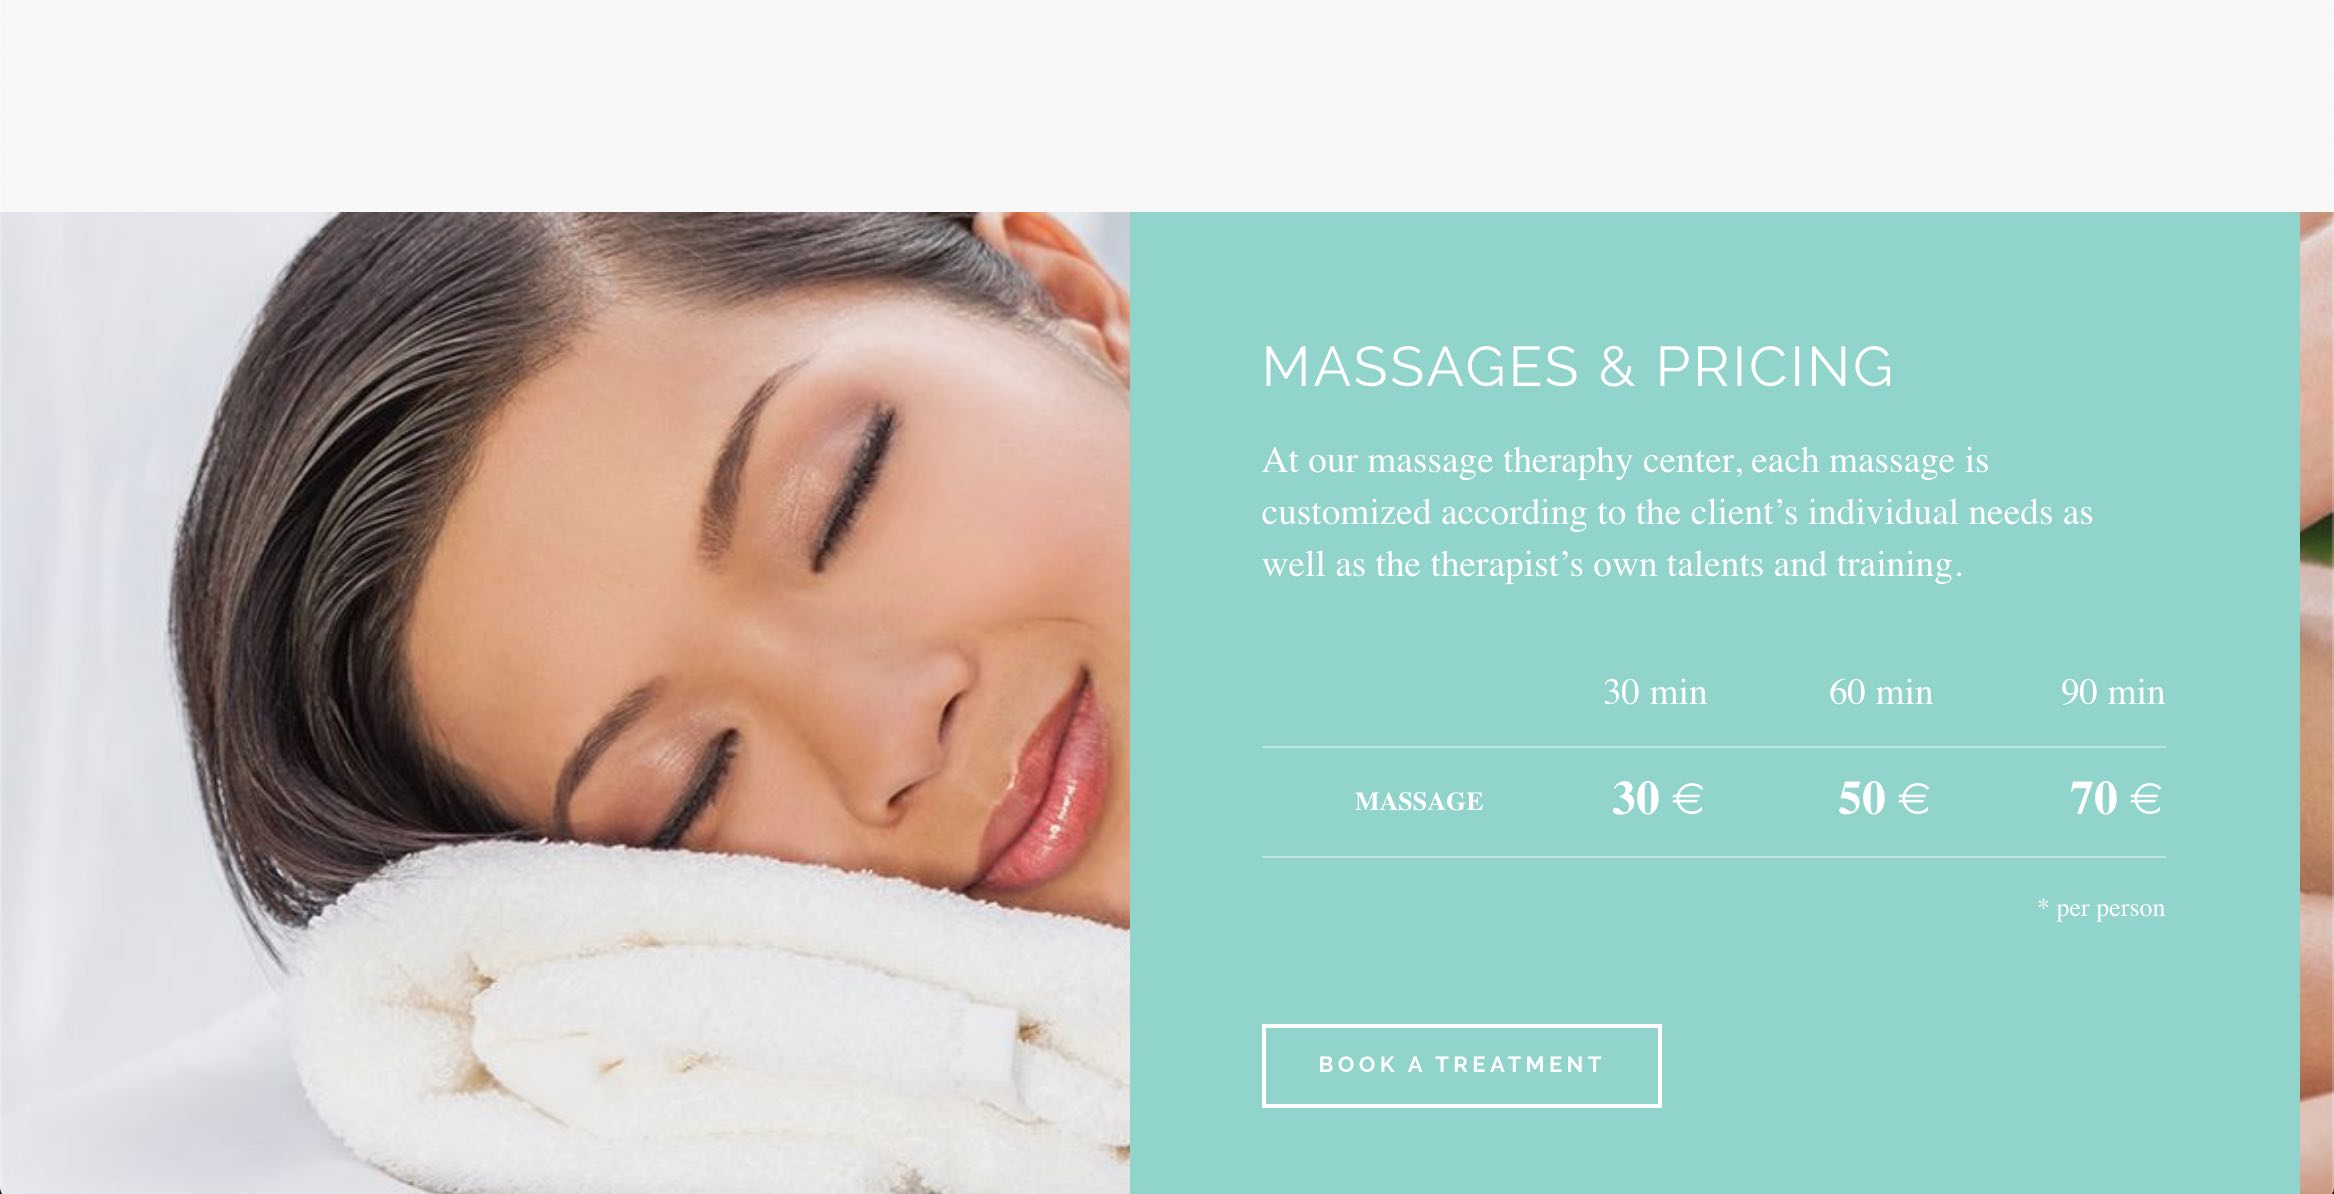 Diseño Web Wordpress y Posicionamiento en Google - Emporium Hibiscus Massage Tenerife